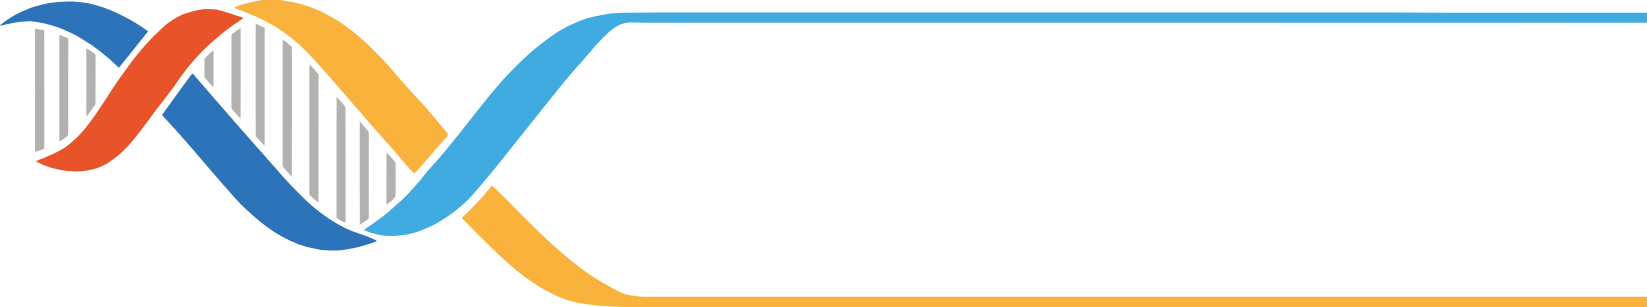 Krystal Biotech logo large for dark backgrounds (transparent PNG)